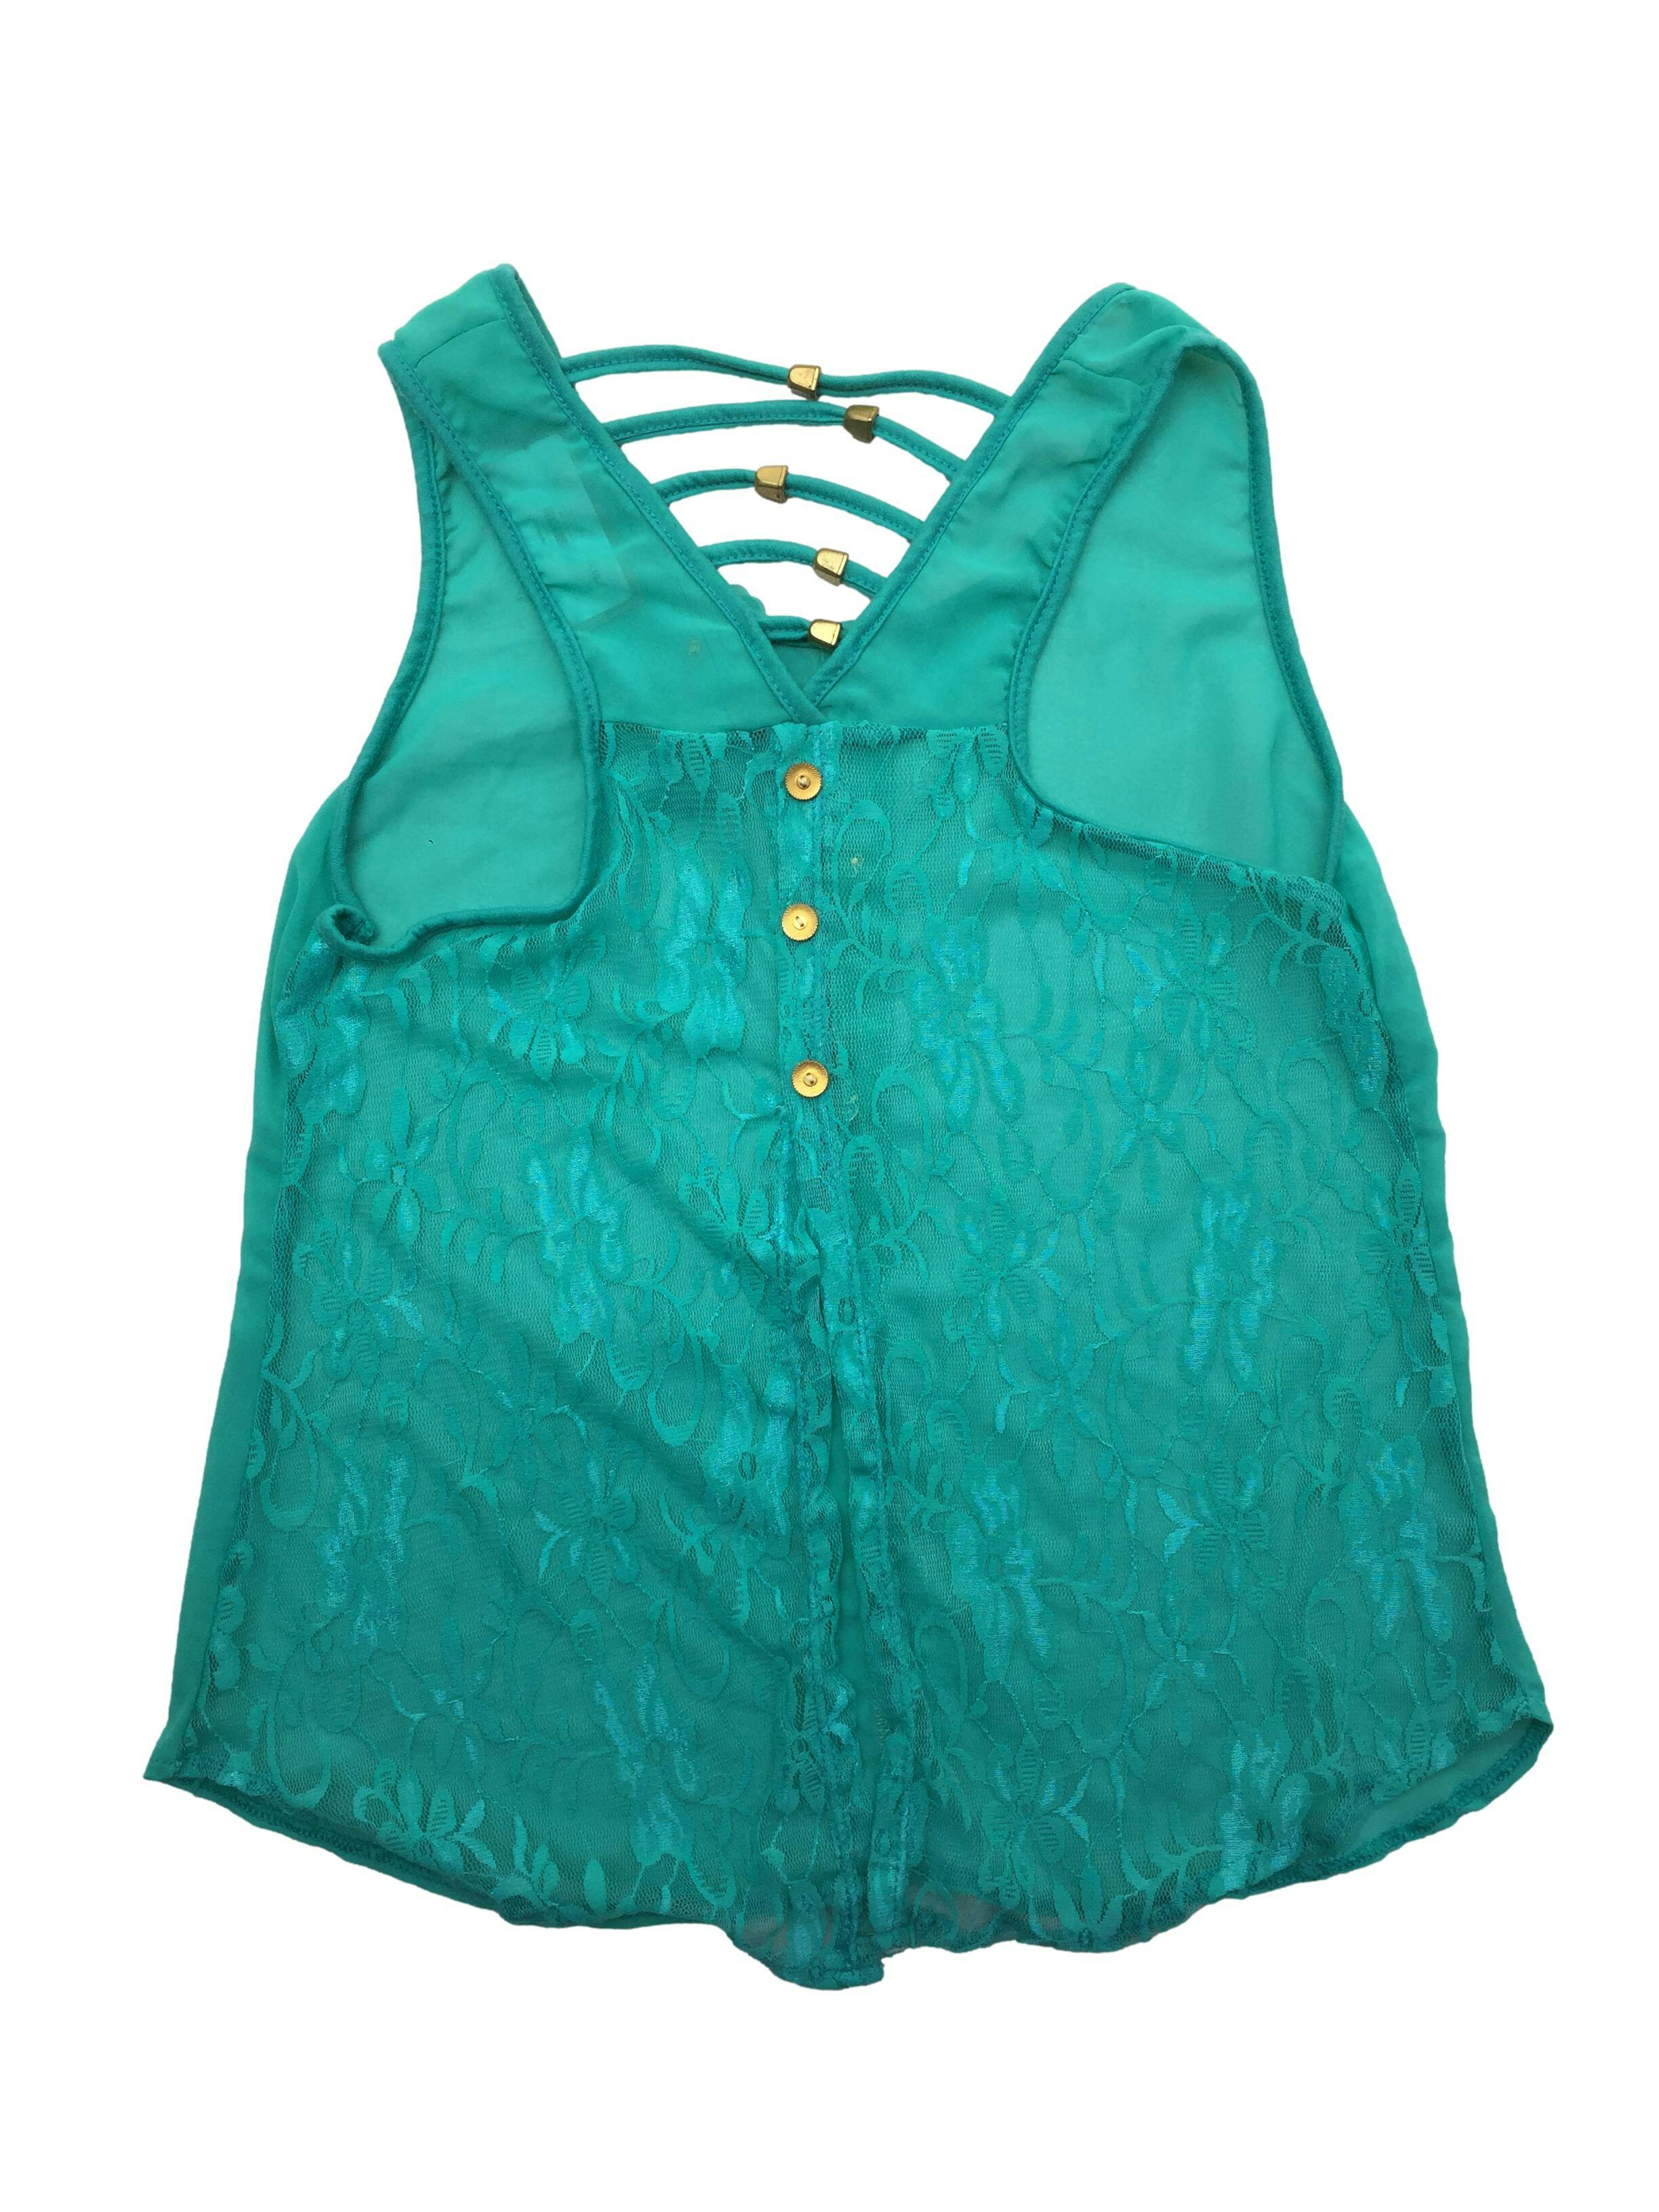 Blusa verde agua de gasa con aplicación de botones y flor, espalda de encaje con rejilla en escote. Busto 90cm, Largo 52cm.